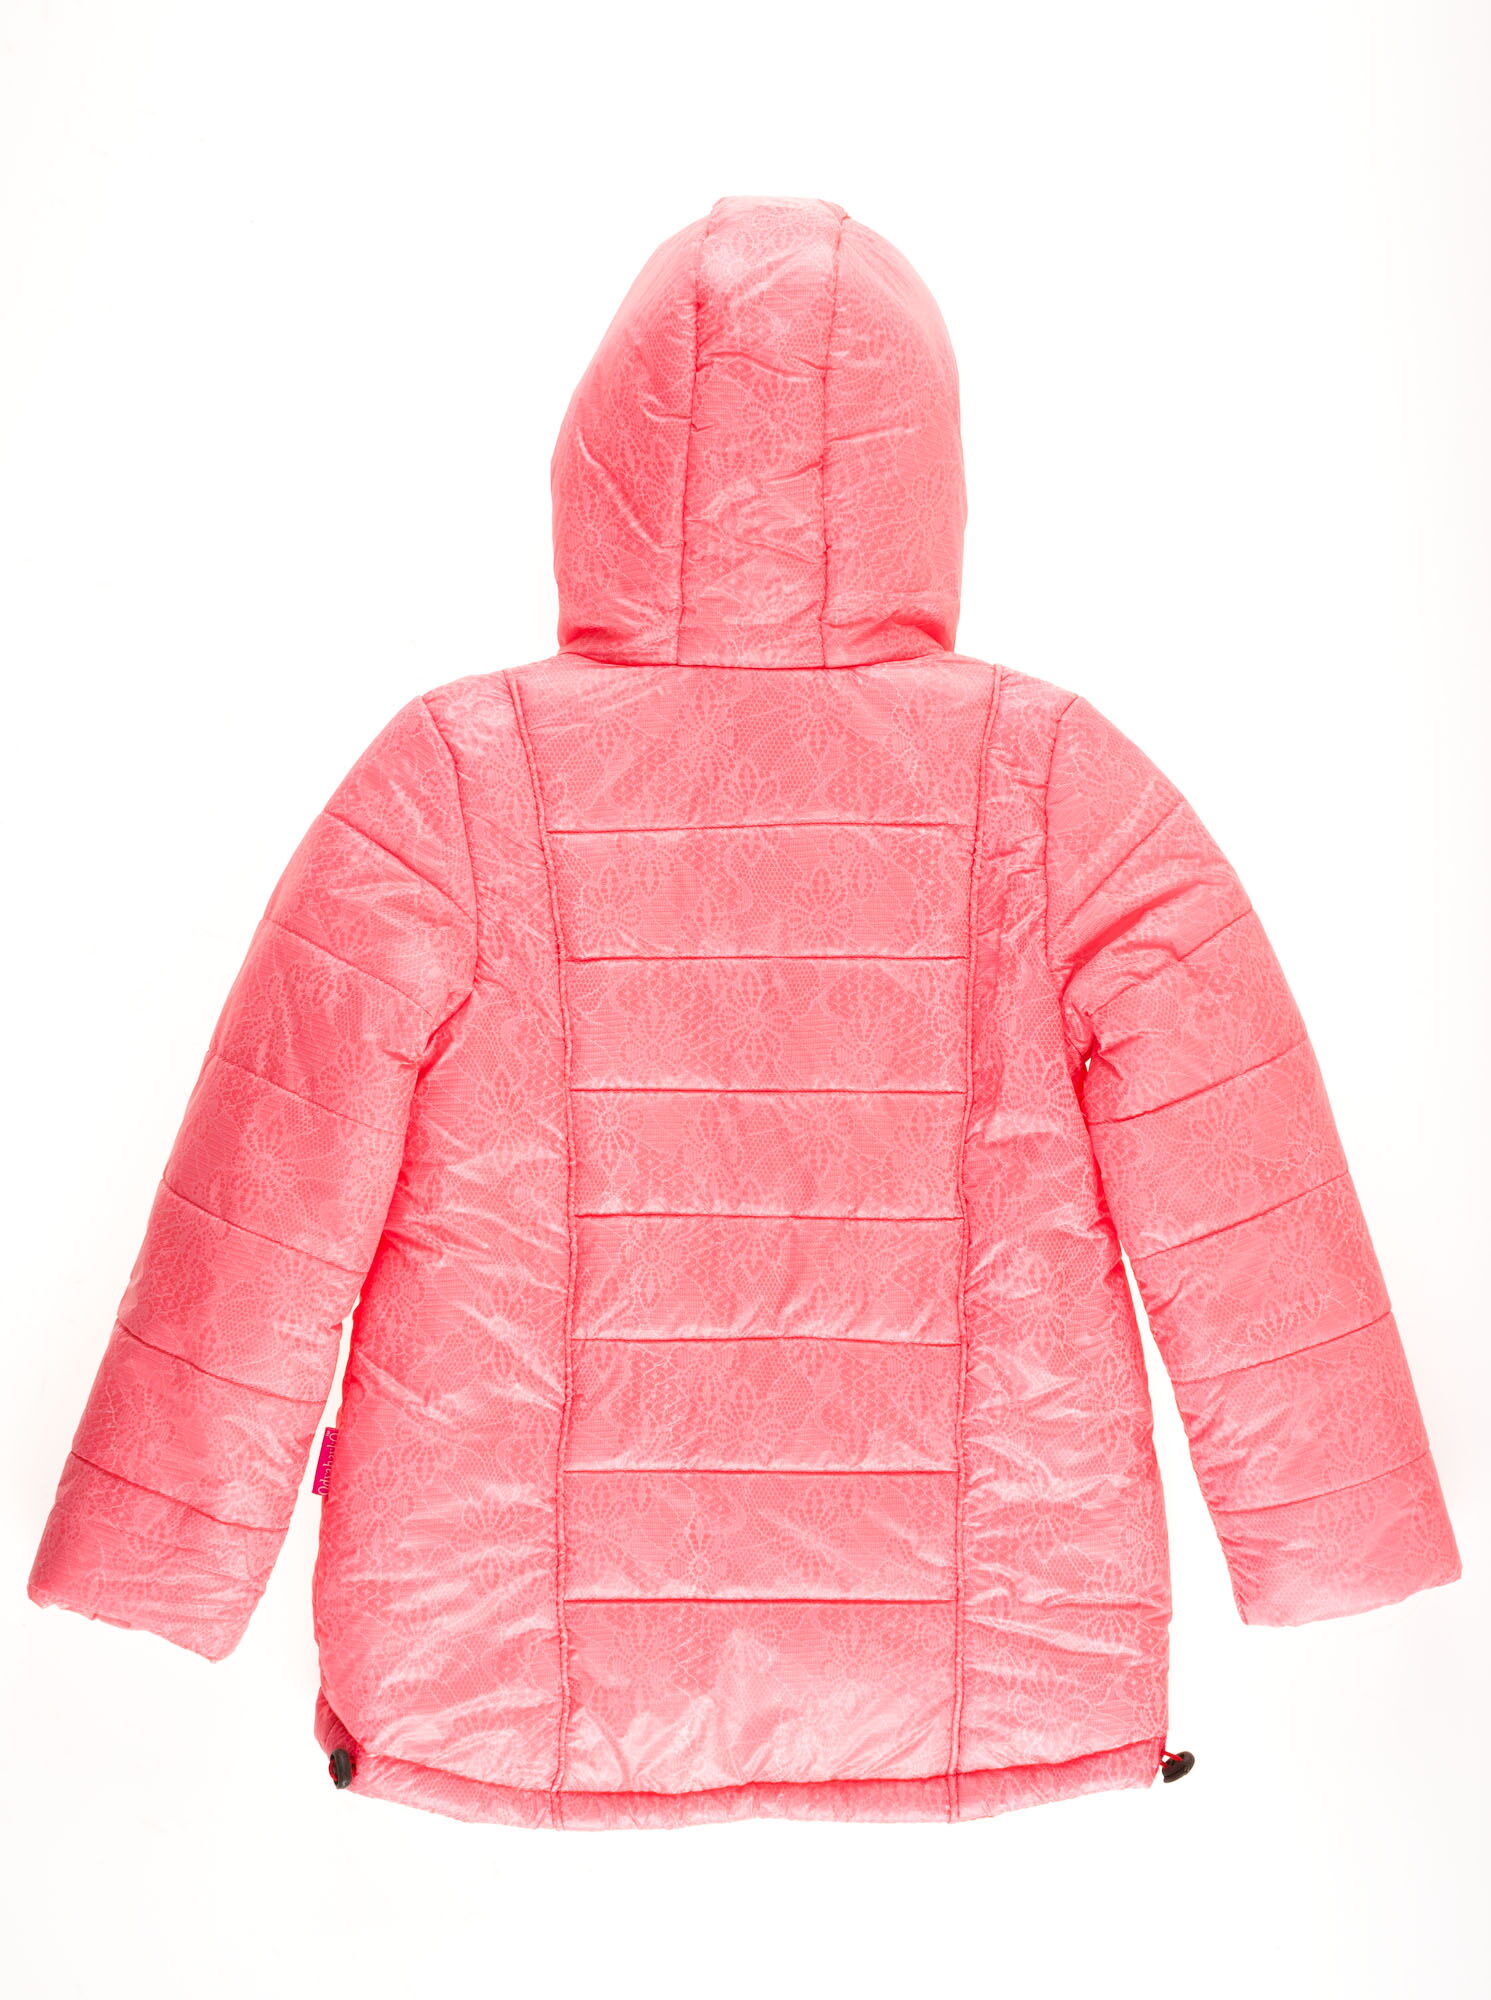 Куртка для девочки ОДЯГАЙКО коралловая 22180О - размеры